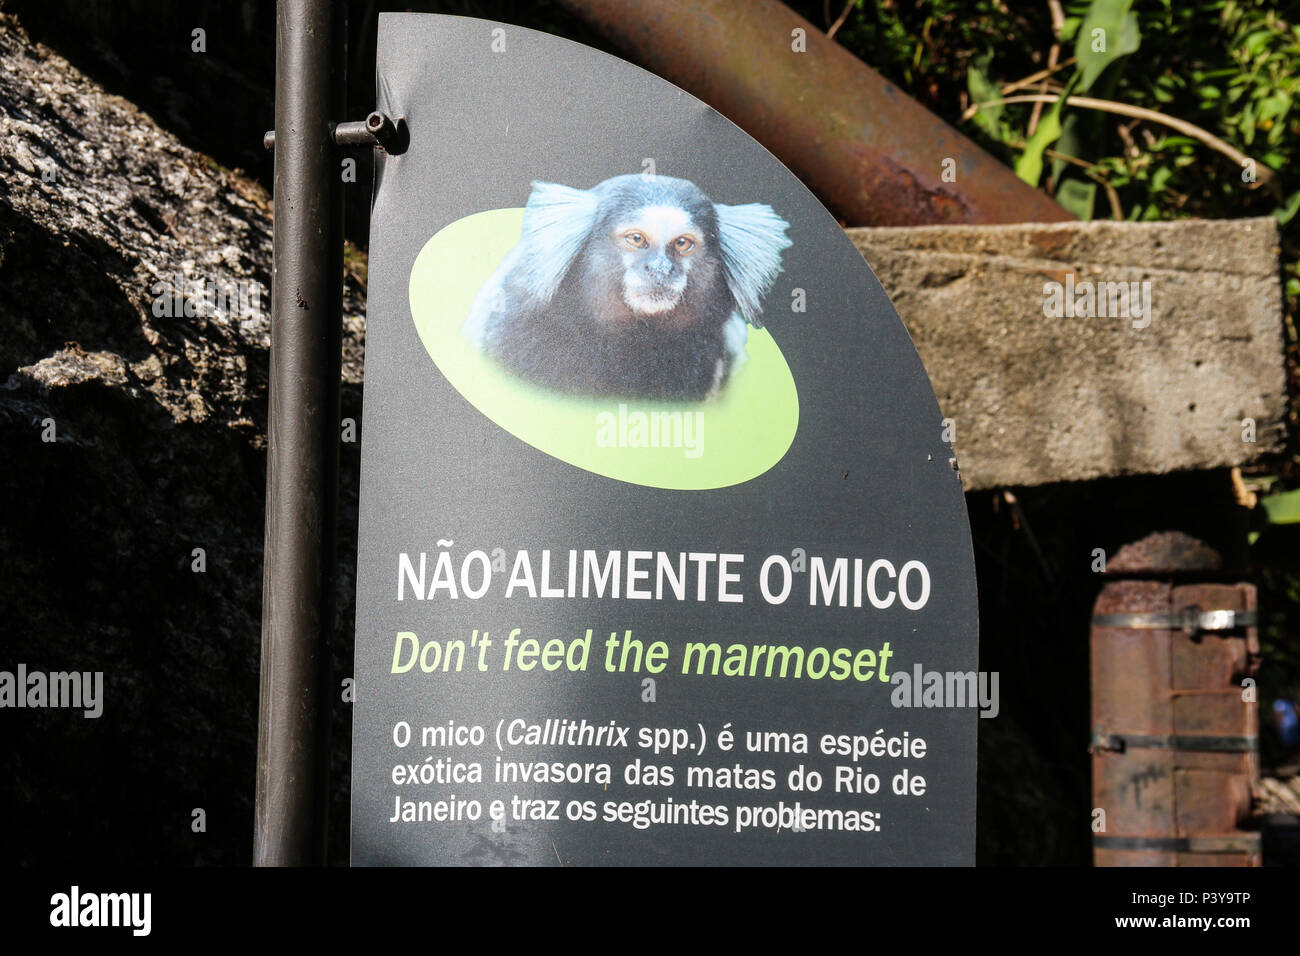 La plaza com advertências de preservação do Meio Ambiente, em el parque do Rio de Janeiro. Foto de stock